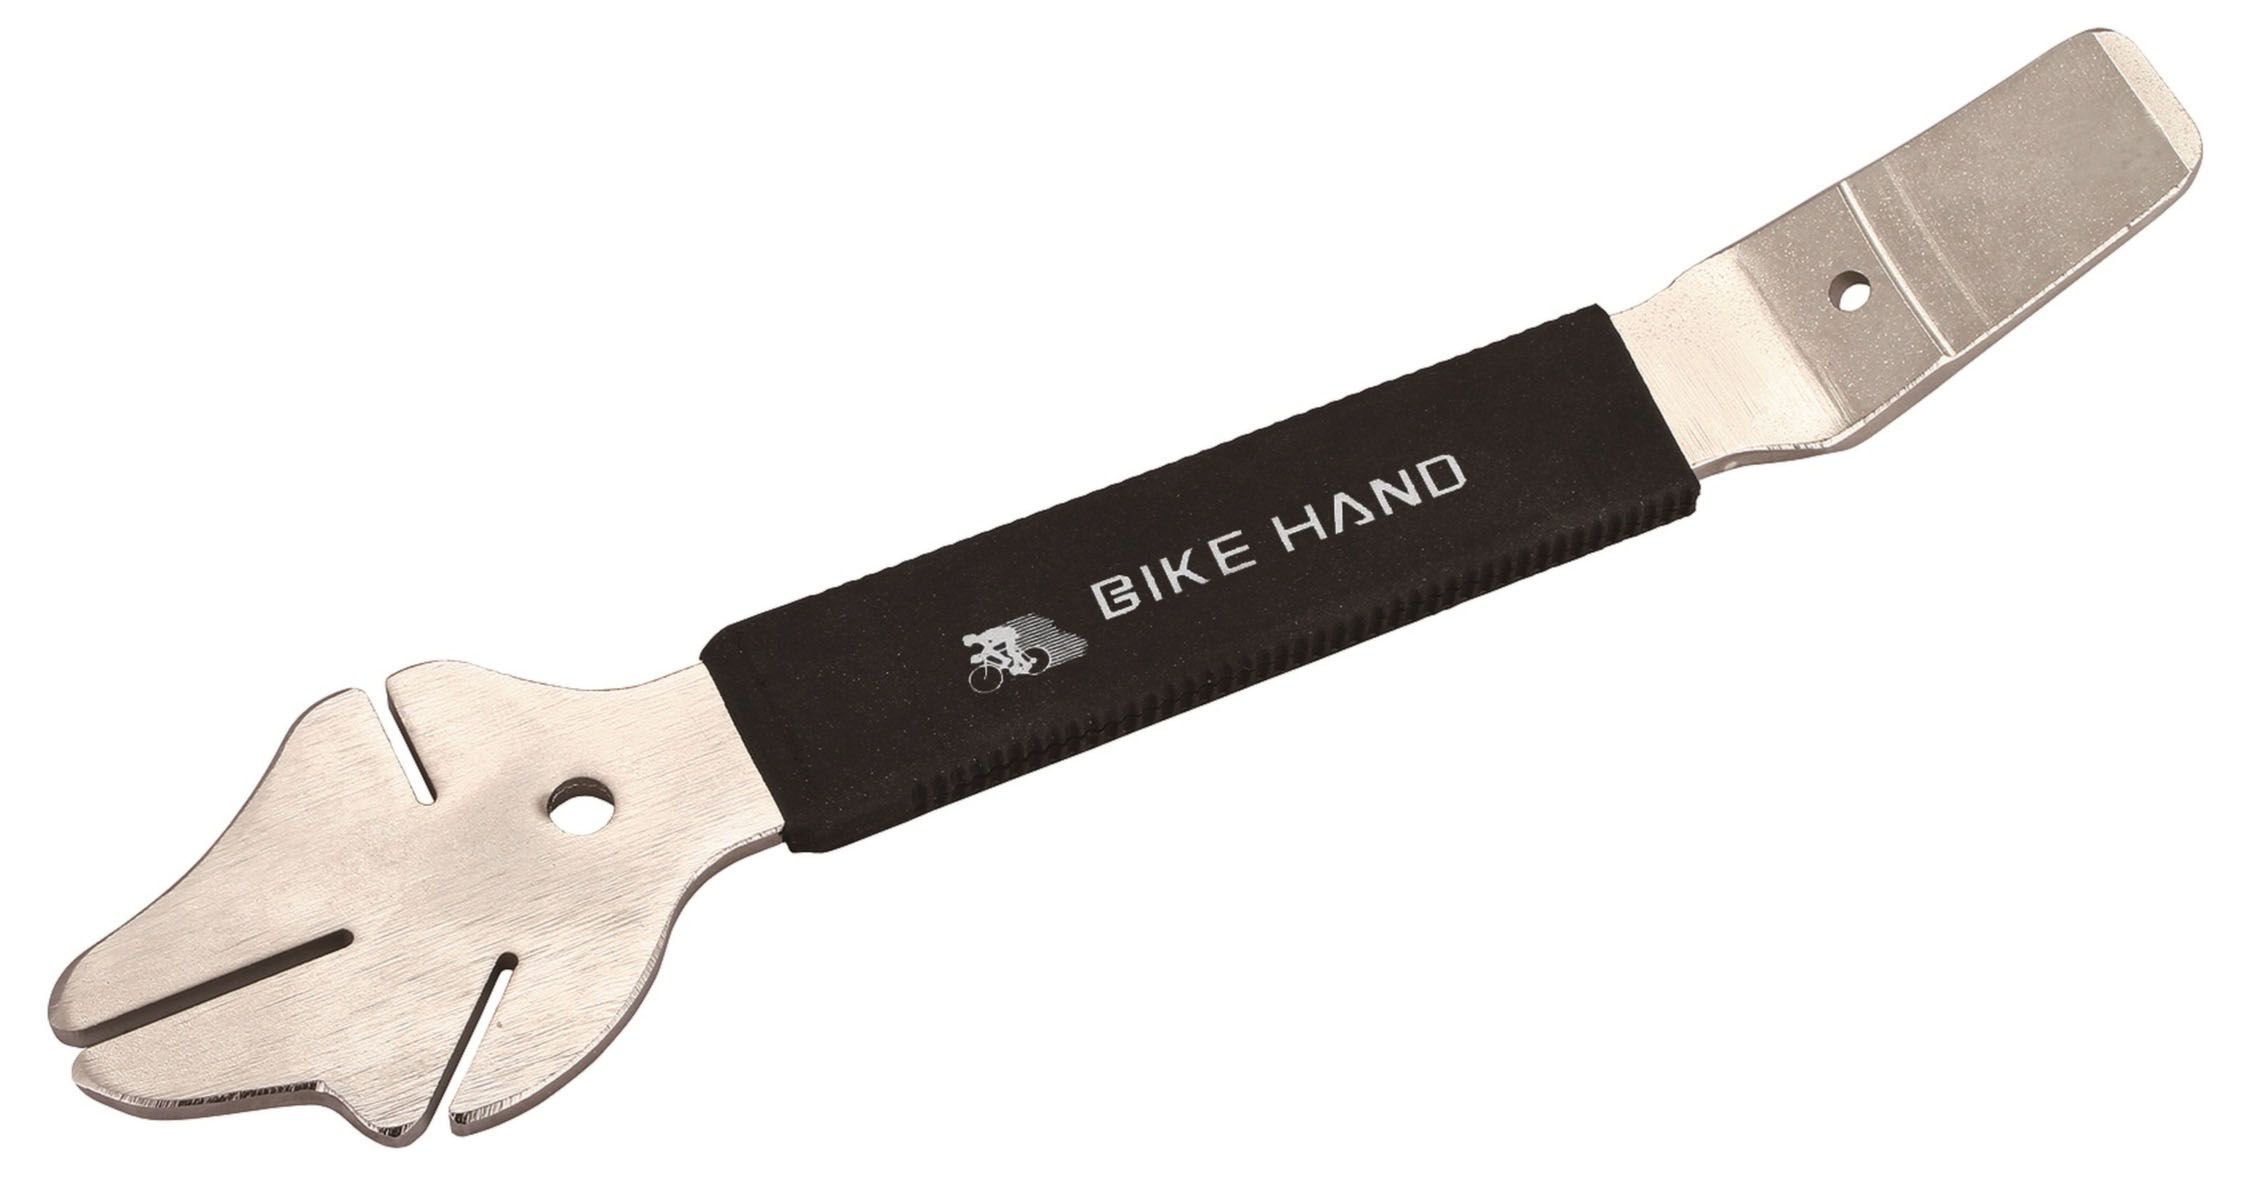  Инструмент для велосипеда BIKE HAND YC-172